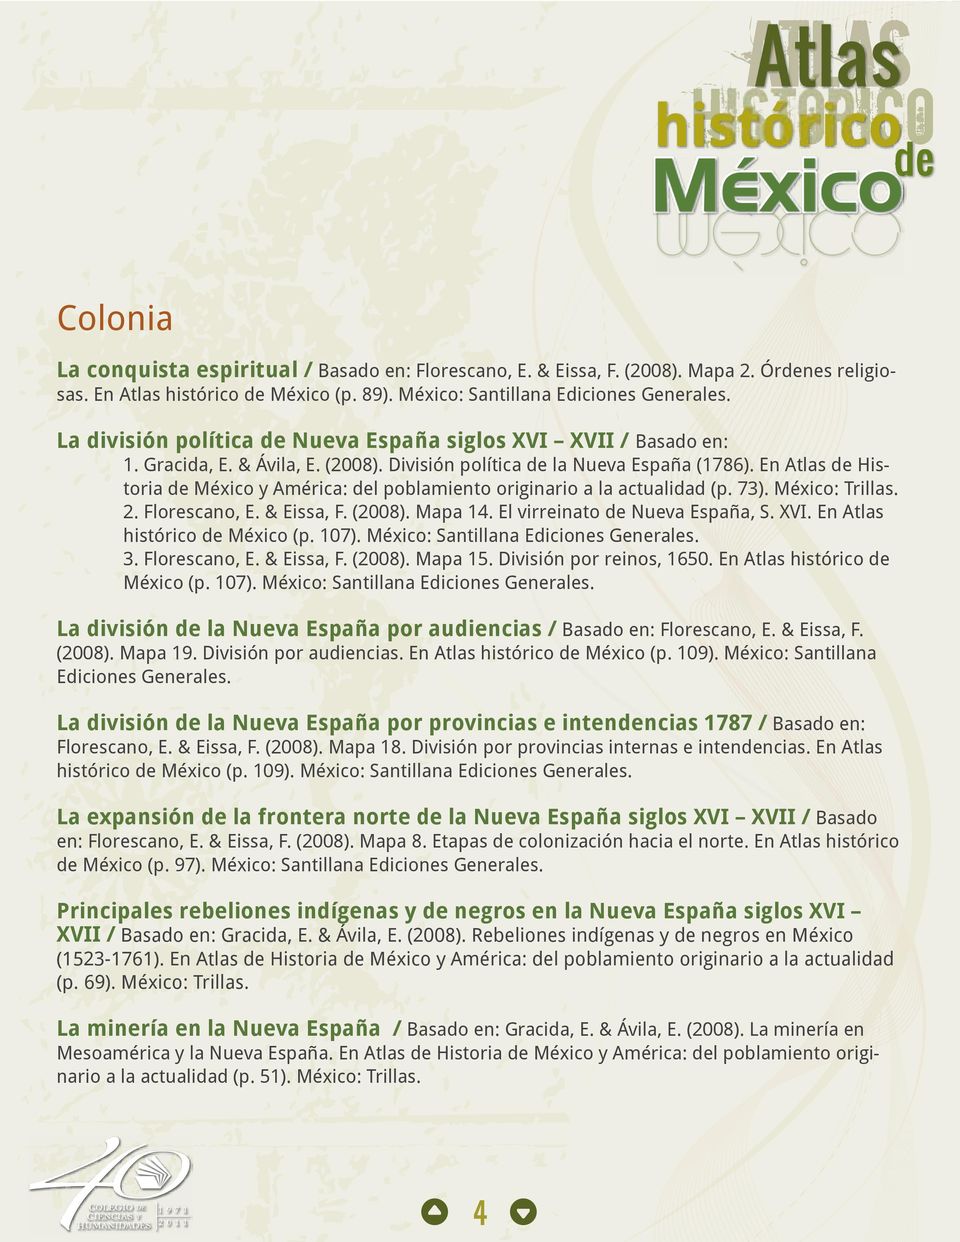 En Atlas de Historia de México y América: del poblamiento originario a la actualidad (p. 73). México: Trillas. 2. Florescano, E. & Eissa, F. (2008). Mapa 14. El virreinato de Nueva España, S. XVI.